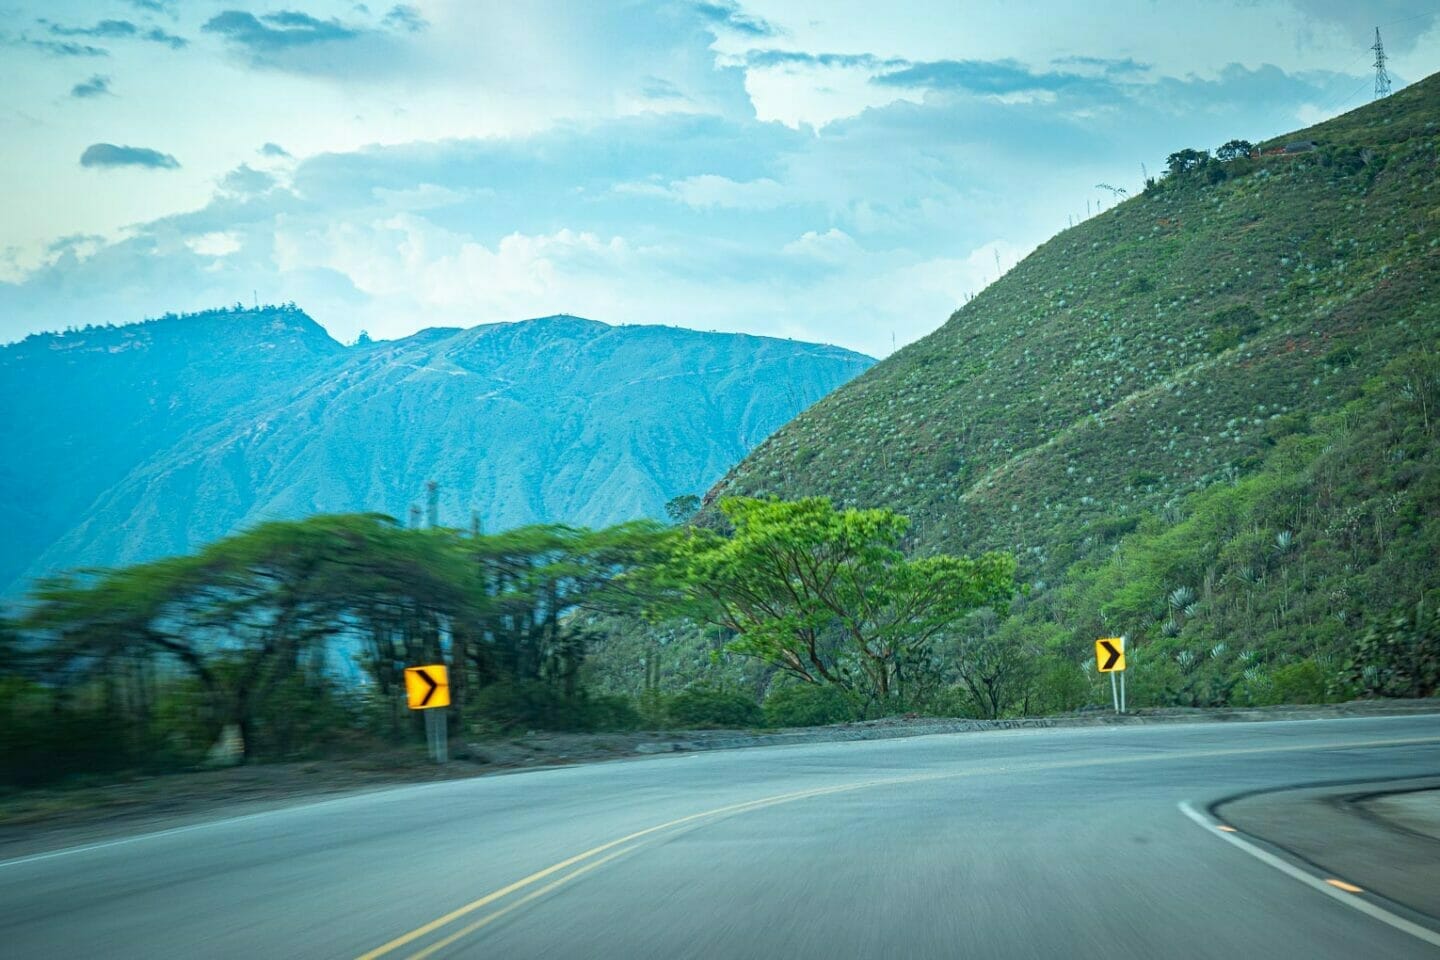 Circuito en carro, una buena opción para organizar un viaje por carretera en Colombia